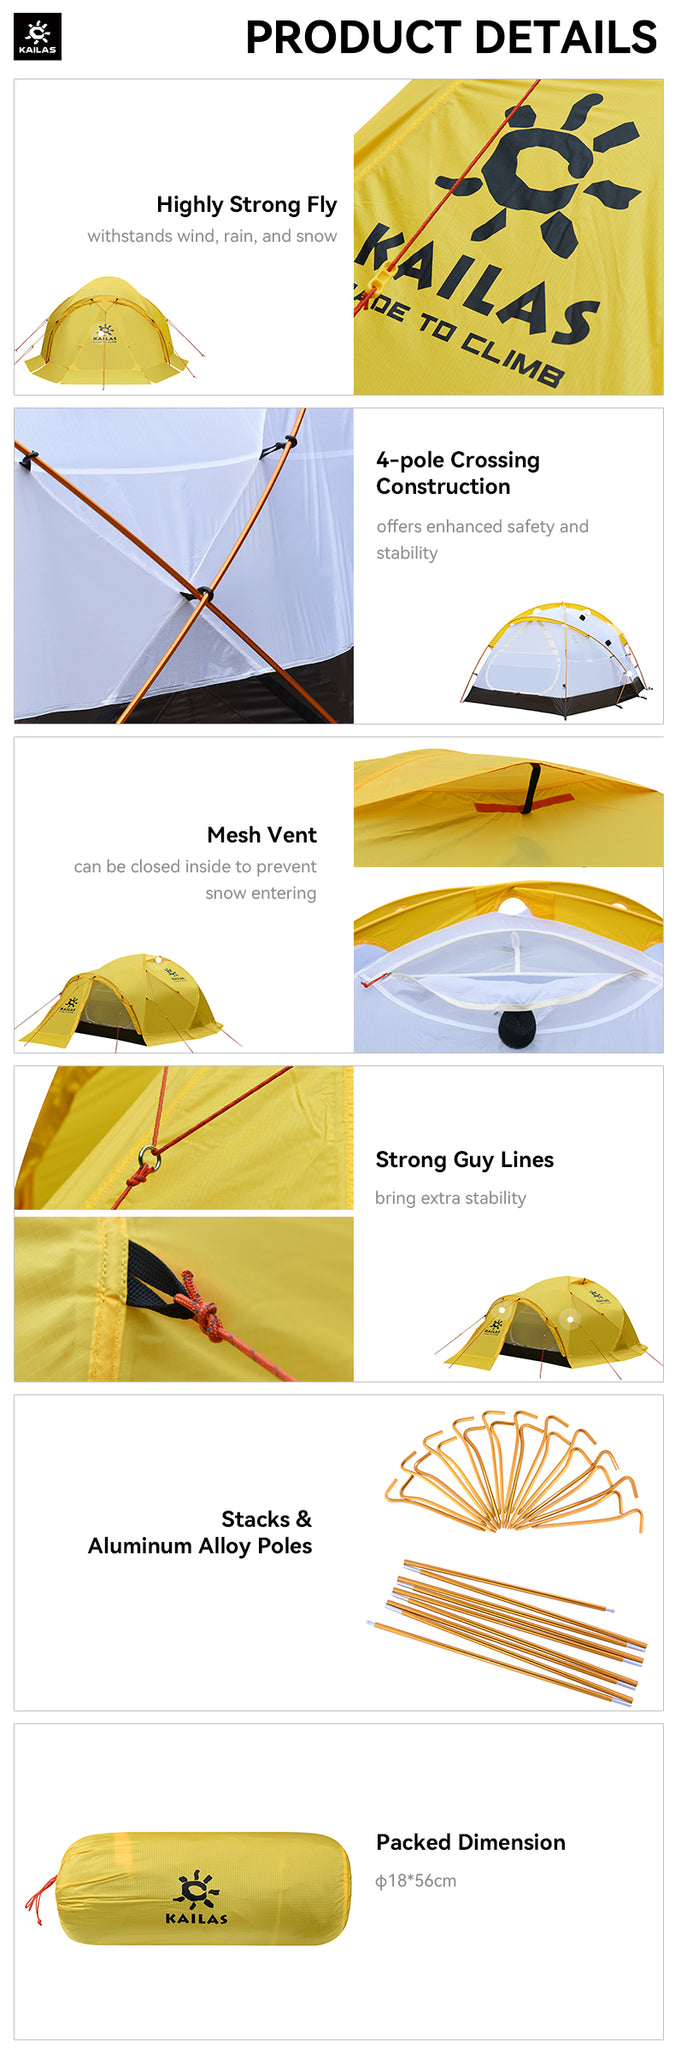 KAILAS X3 Alpine Tent Product Details